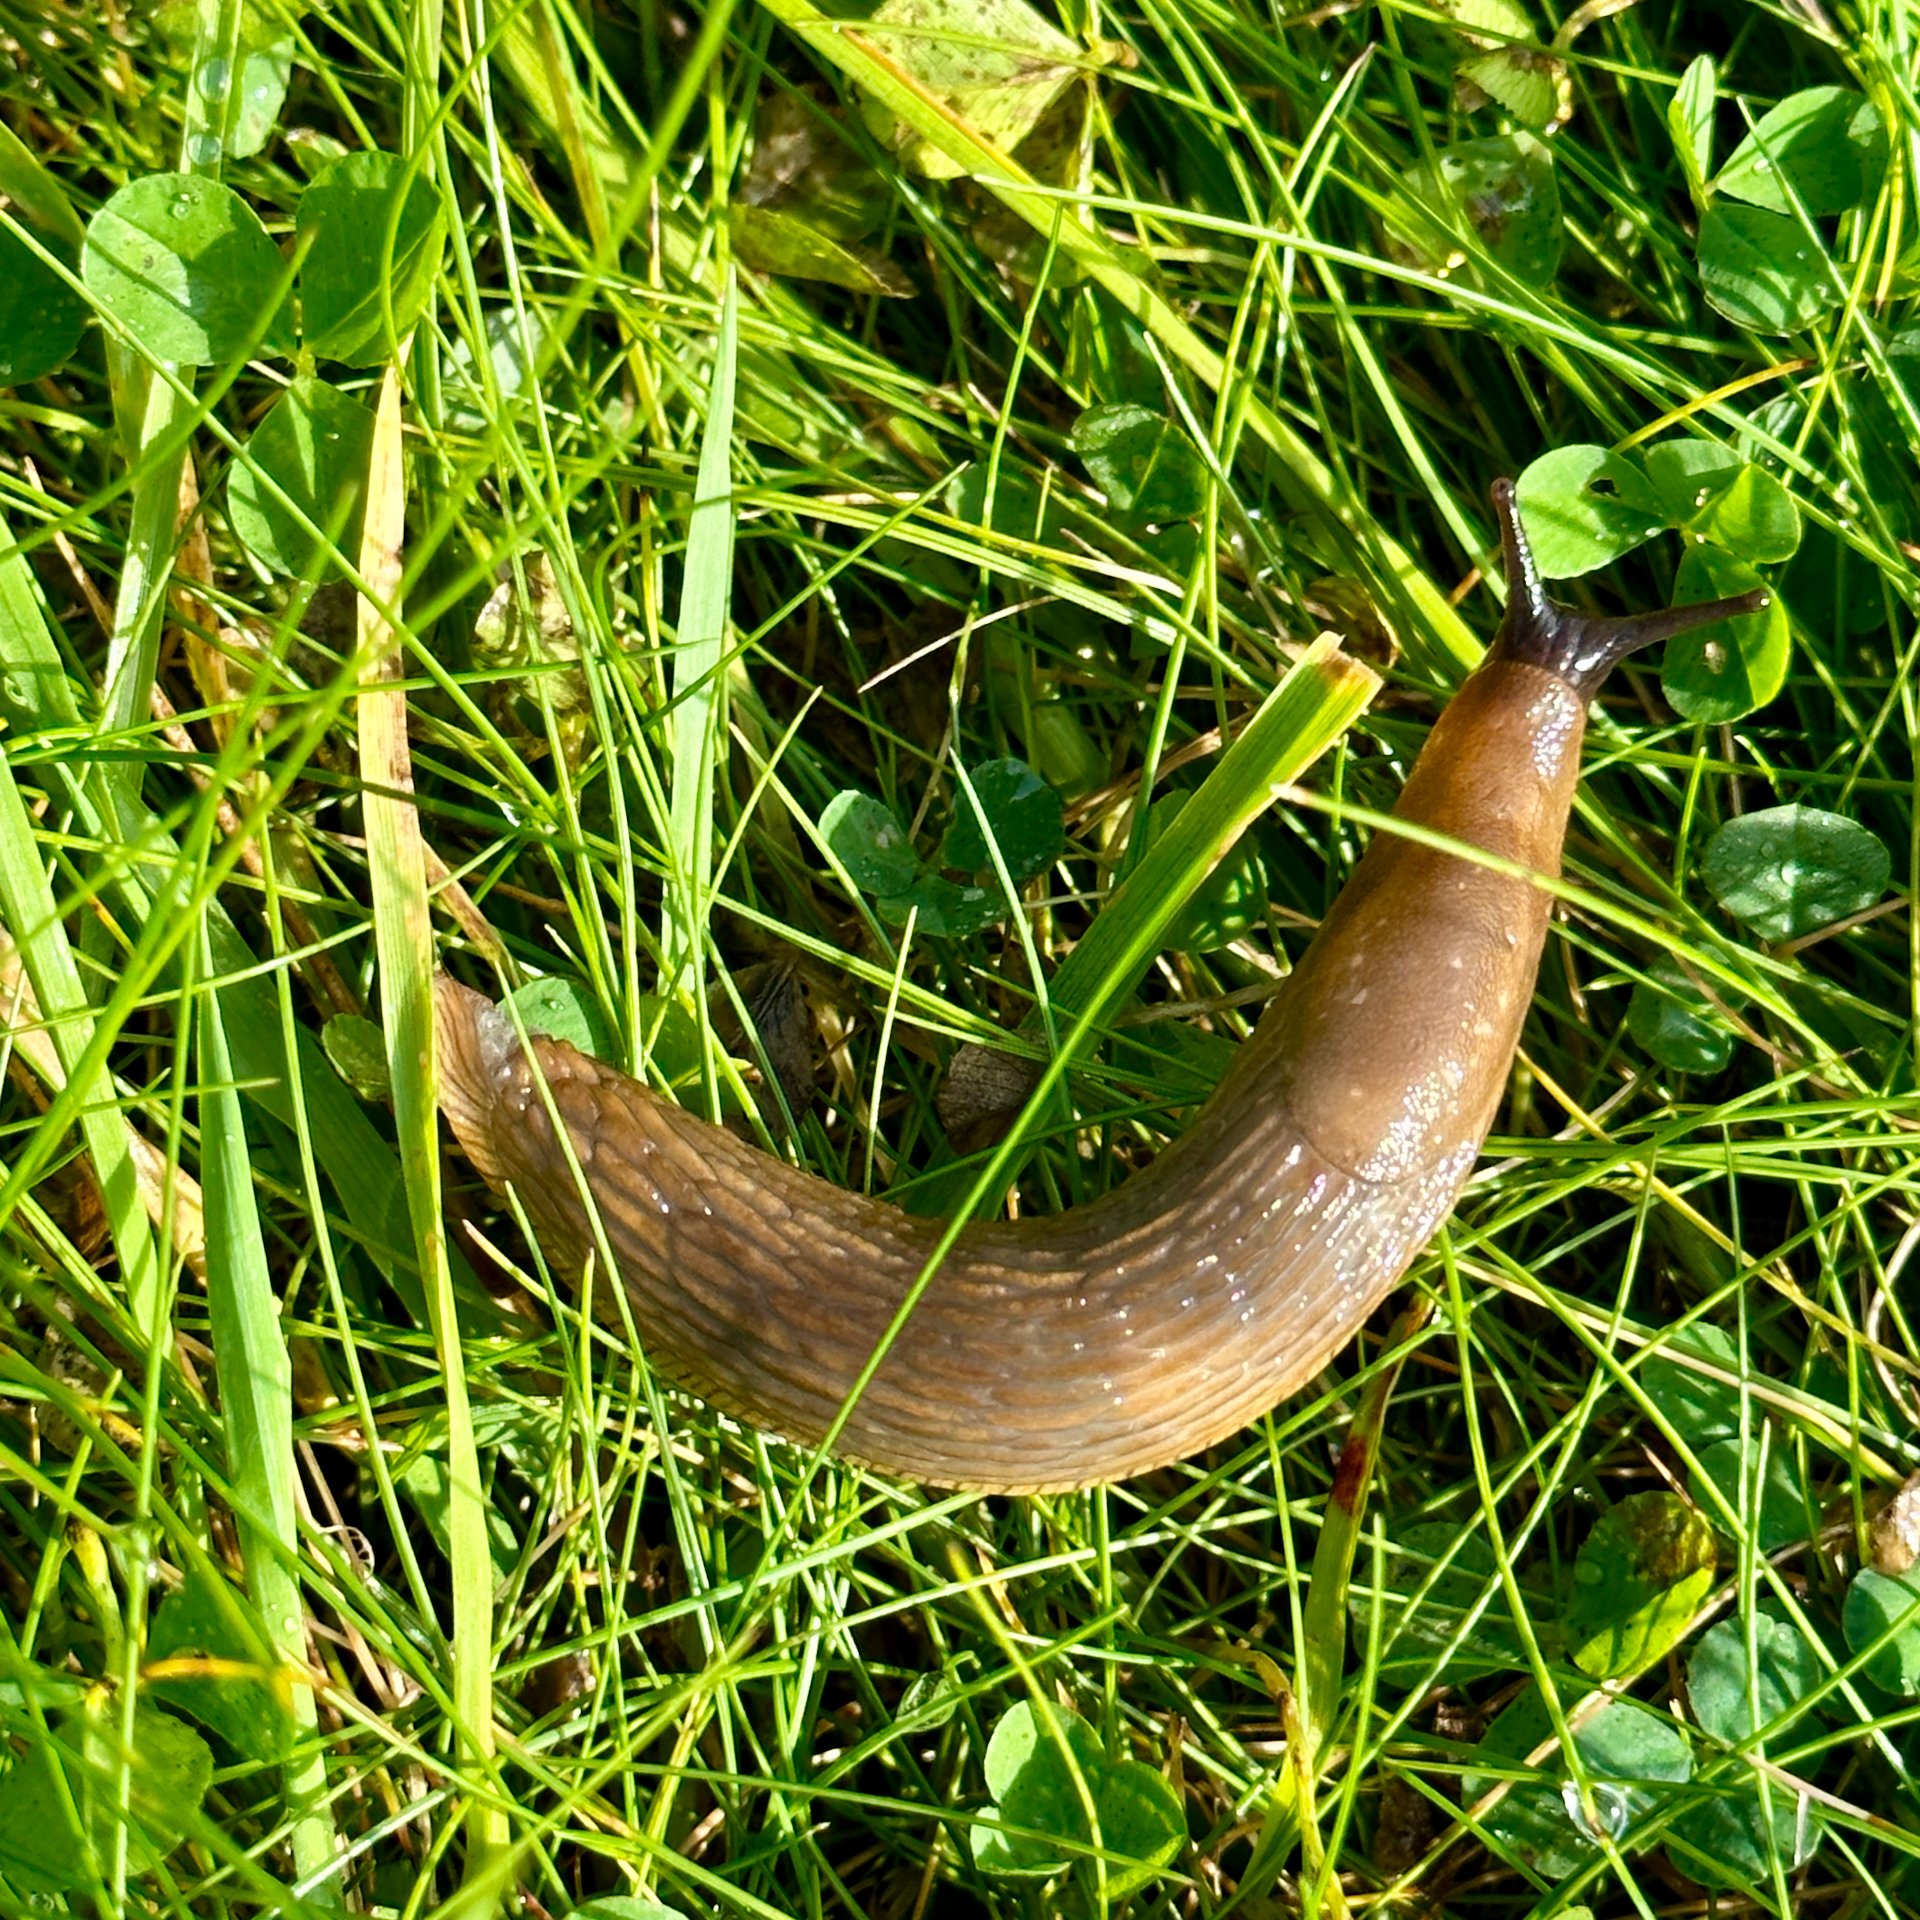  A cool slug - like our banana slugs, but with a black head.  